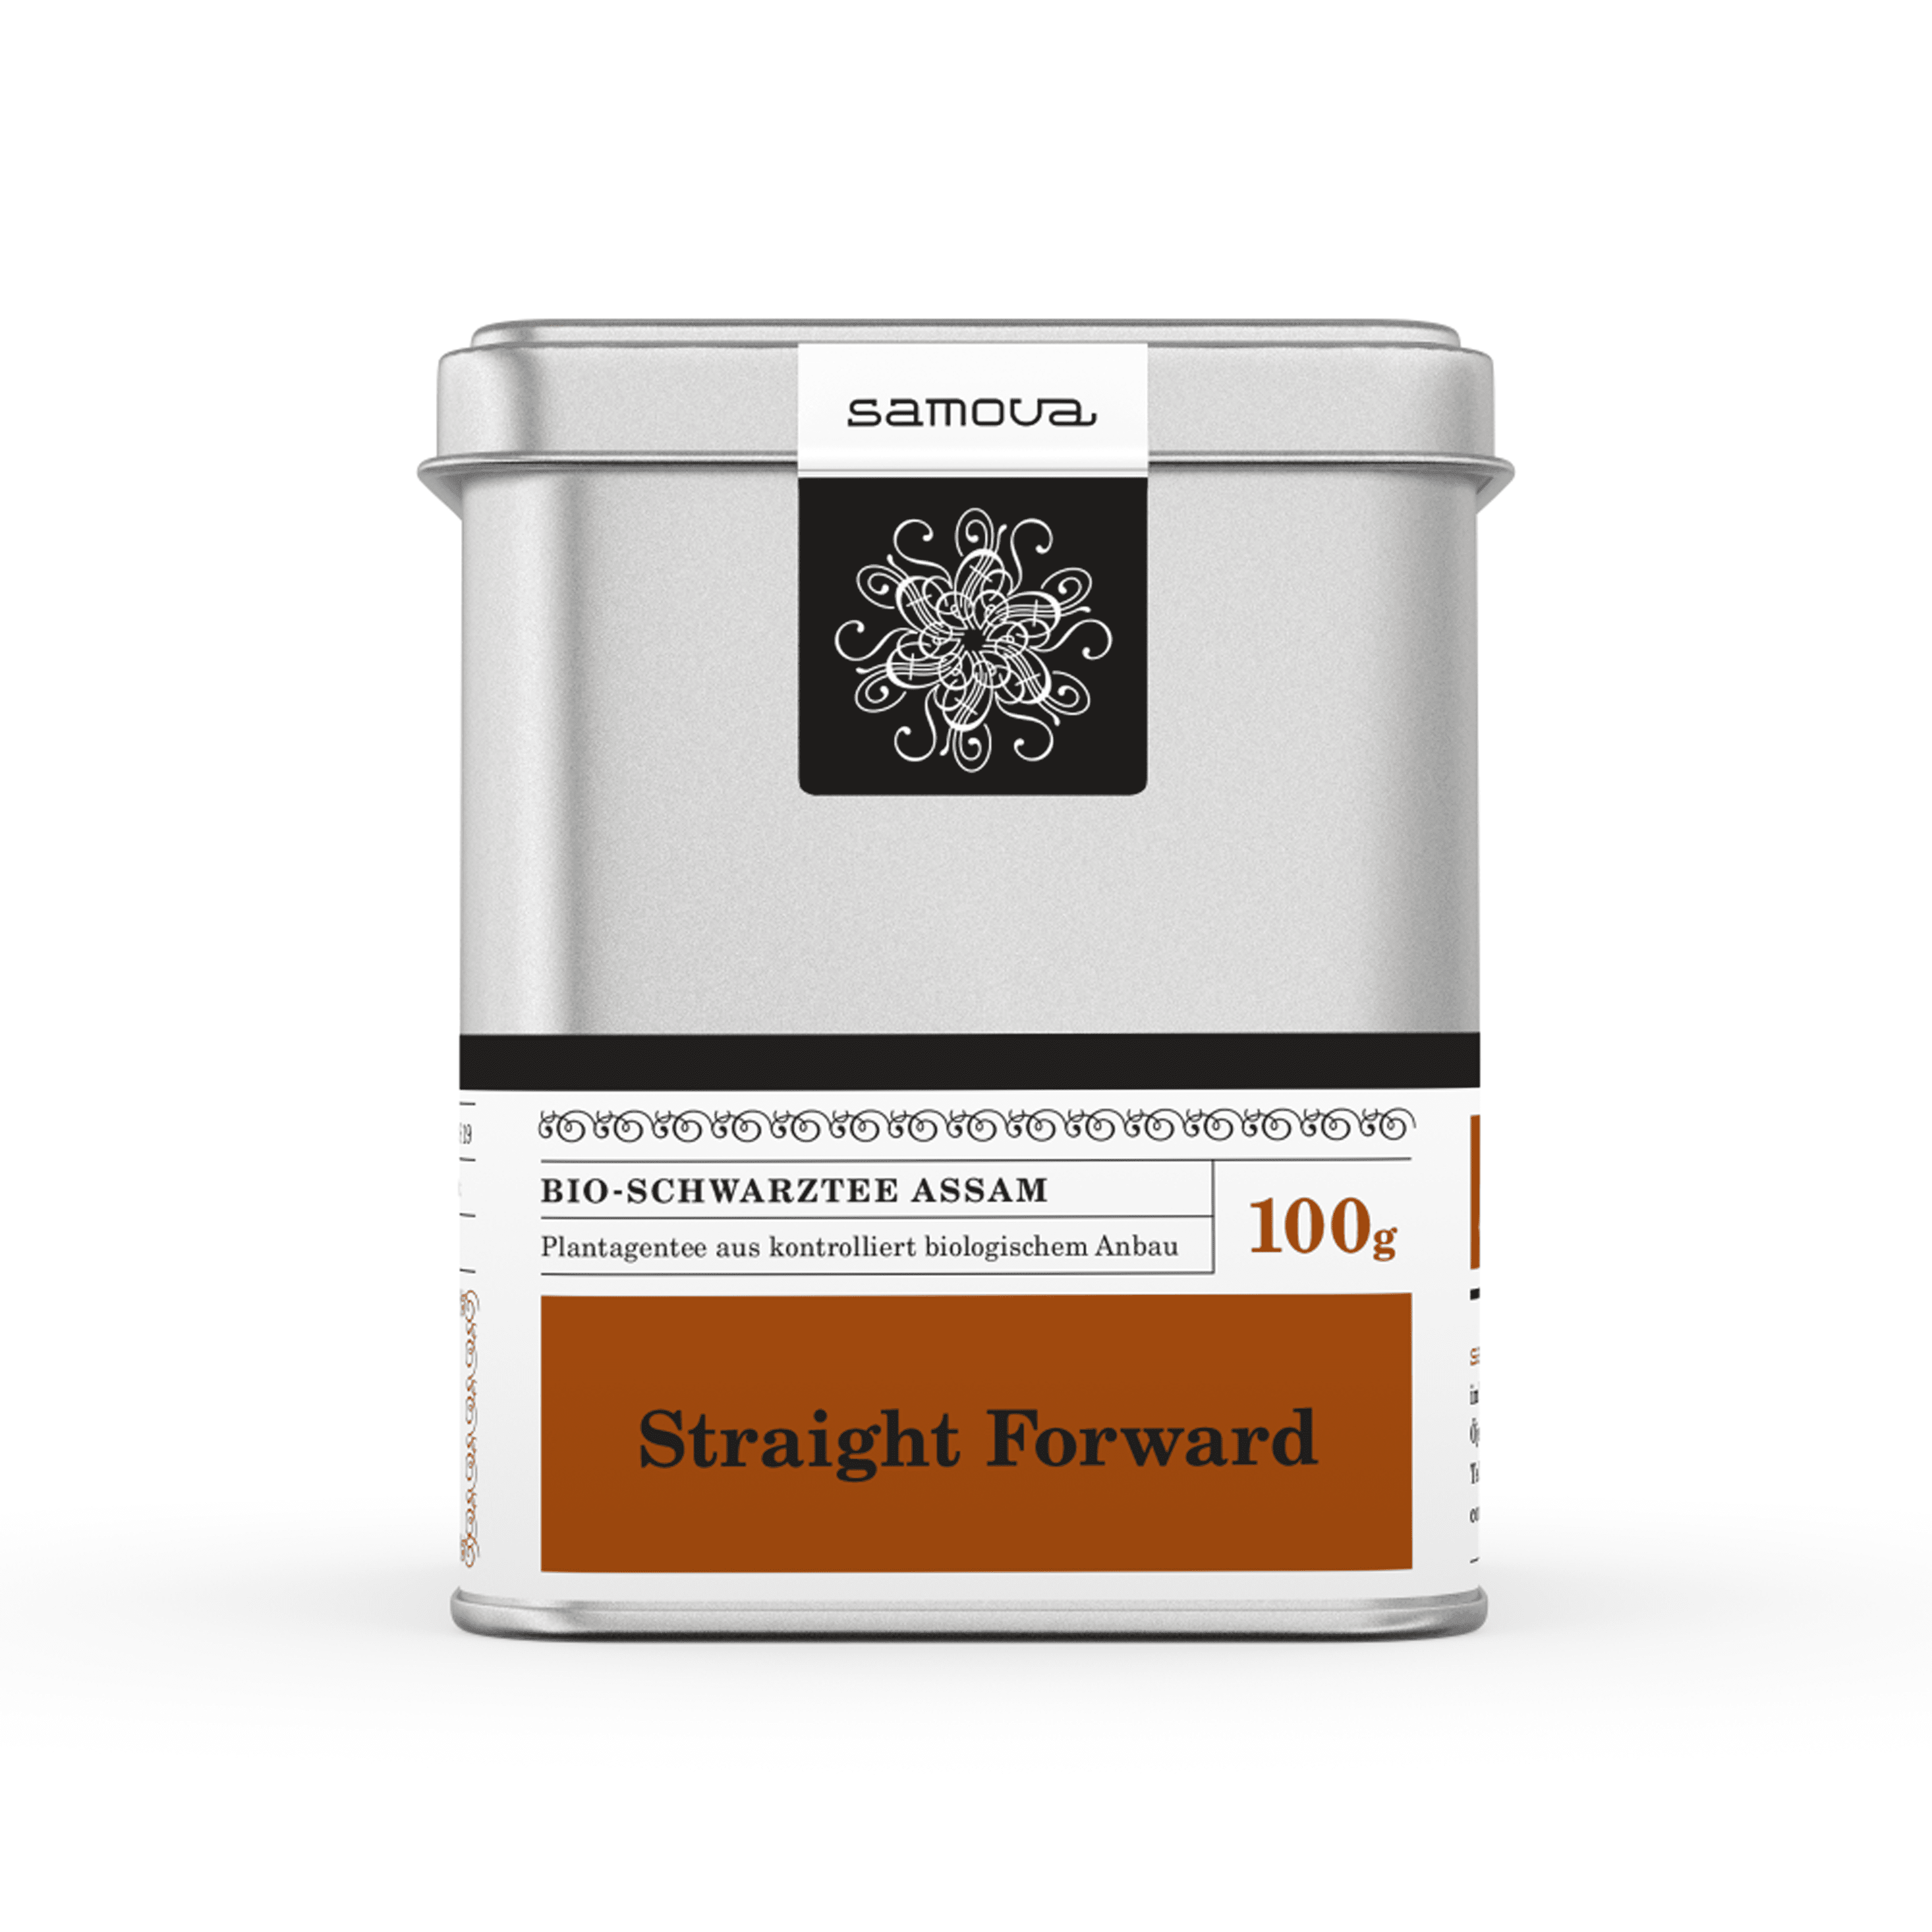 Can of Straight Forward tea